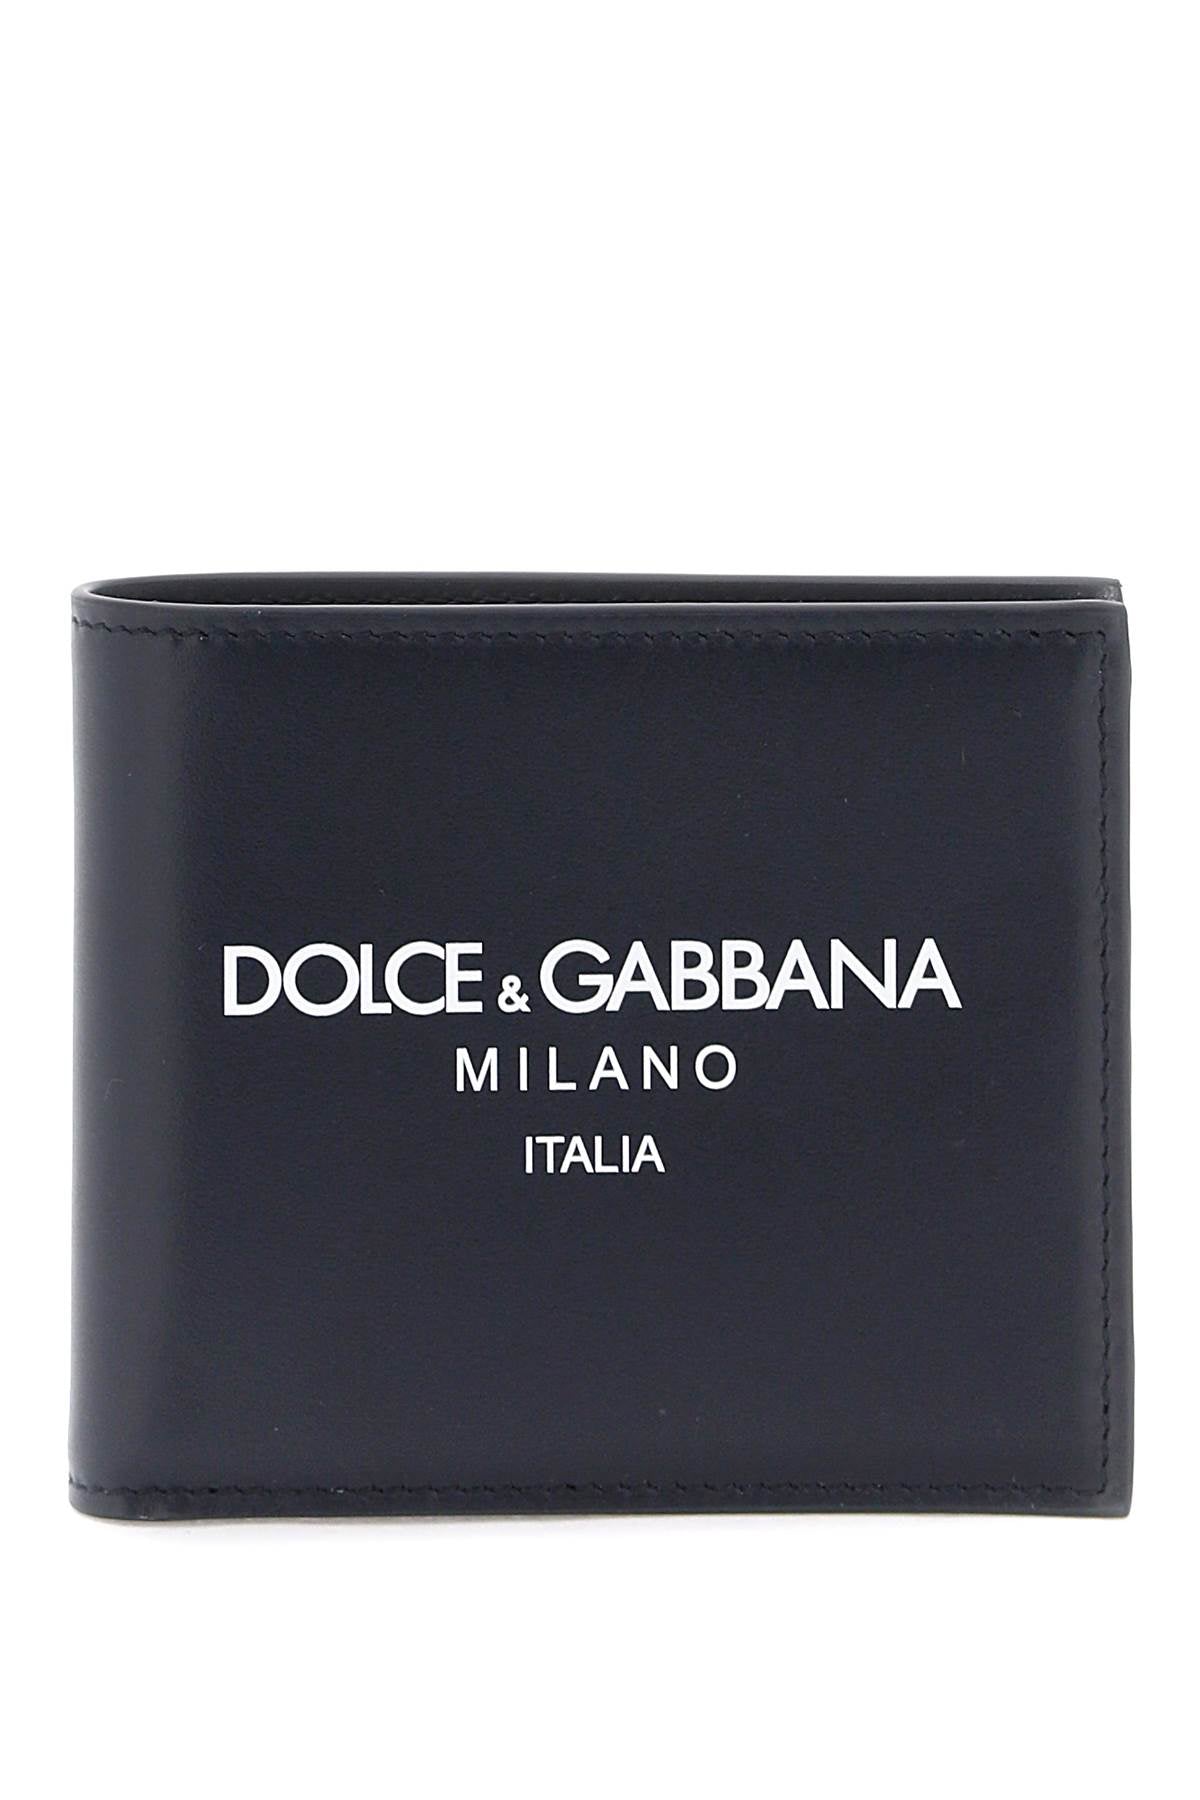 Dolce & Gabbana Dolce & gabbana wallet with logo